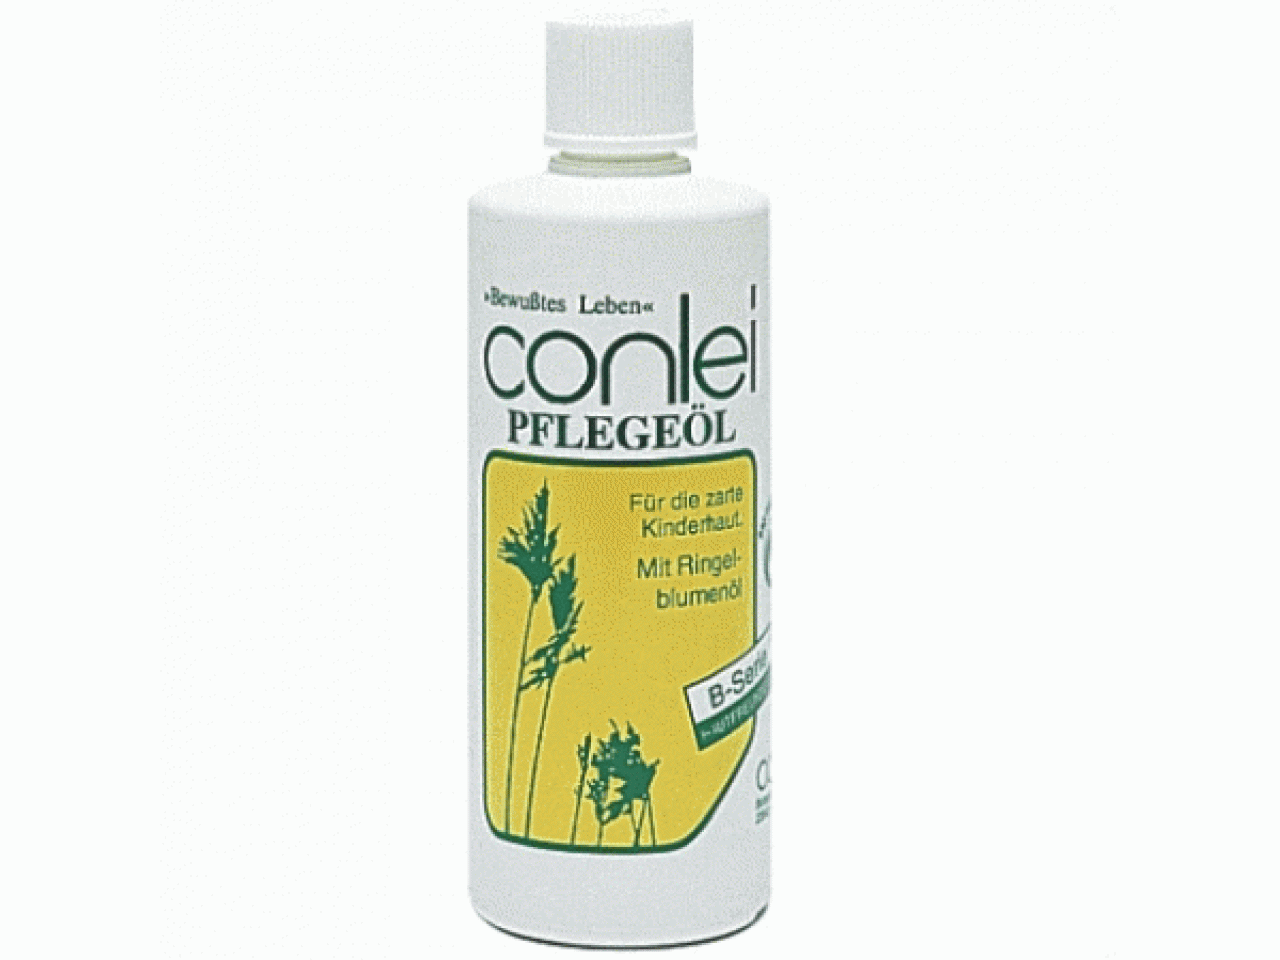 Conlei - Pflegeöl mit Ringelblumenöl 125 ml